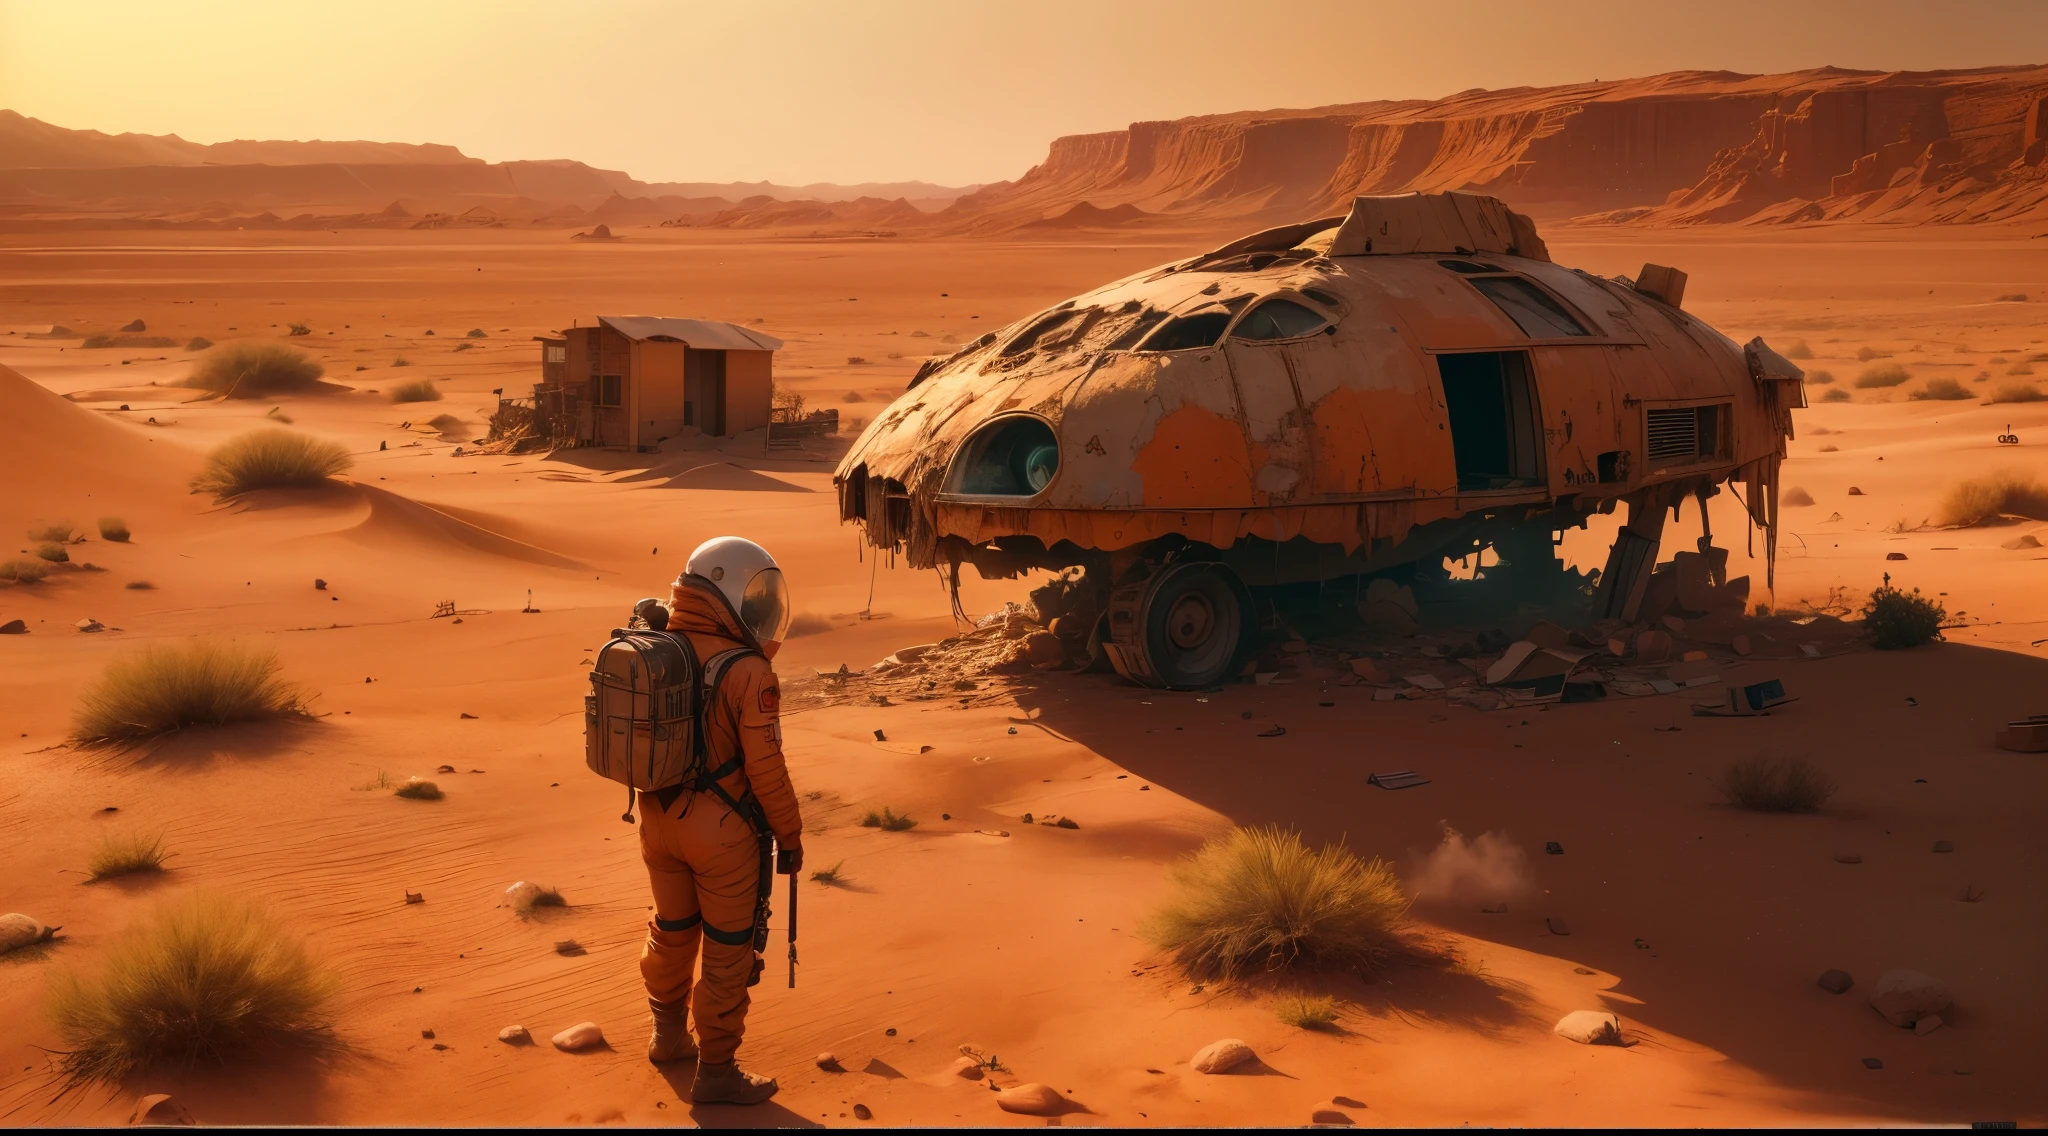 (最好的品質,4k,8K,高解析度,傑作:1.2),超詳細,(實際的,photo實際的,photo-實際的:1.37),2 倖存者 (男人和女人),沙漠, 電影環境,站在一輛失事的汽車旁邊,看著遠處一架巨大的失事飛機,紅色火星土壤, 乾燥多塵的氣氛,無情的火星景觀,太陽落在地平線上, 投下長長的影子,大片不毛之地,周圍環境荒涼荒涼,腐爛和遺棄的跡象,沉重的孤獨和孤立的空氣,人類文明的遺跡,雜草叢生的植被開墾土地,遠處廢棄已久的建築搖搖欲墜,空氣中漂浮的灰塵顆粒,用回收材料製成的臨時住所,灼熱的陽光照在他們身上,他們臉上帶著疲倦的表情和決心,破舊的衣服,工具和用品散落在他們周圍,救生衣保護他們免受惡劣環境的影響,未來火星城市的遠景, 空曠而寂靜,深深的孤獨感和渴望,紅橙色調在調色板中占主導地位,戲劇性的燈光, 投射出深深的陰影,ailing sounds of wind blowing through the 沙漠,沉默的迴響籠罩著現場,火星深不可測的浩瀚, 在宏偉的計劃中感到渺小和微不足道.